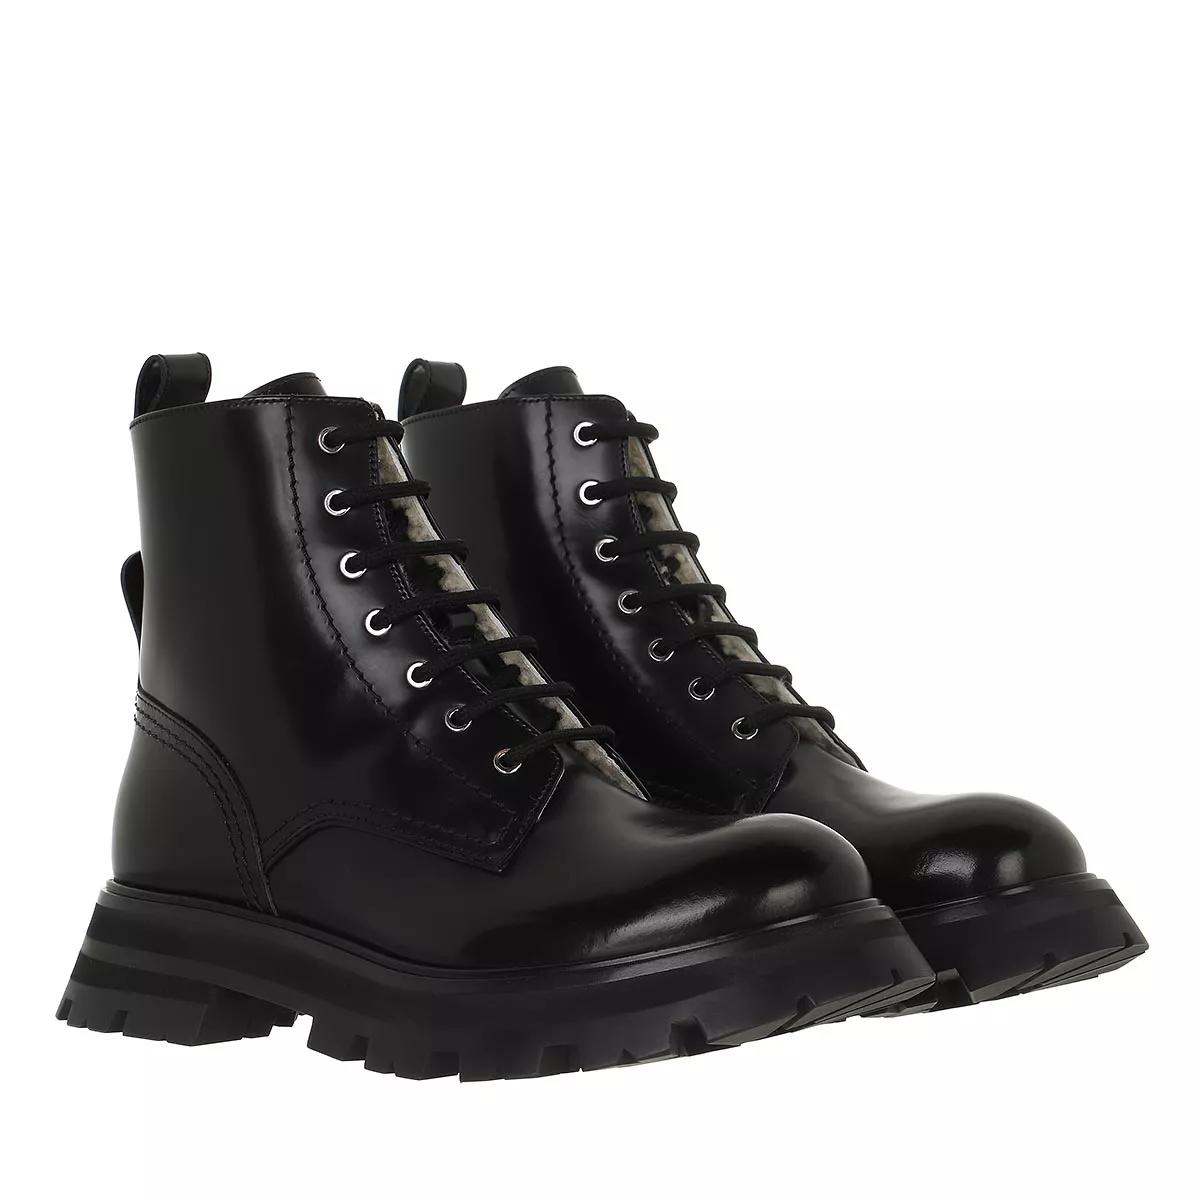 Alexander McQueen Boots & Stiefeletten - Ankle Boots Leather - Gr. 37 (EU) - in Schwarz - für Damen von alexander mcqueen